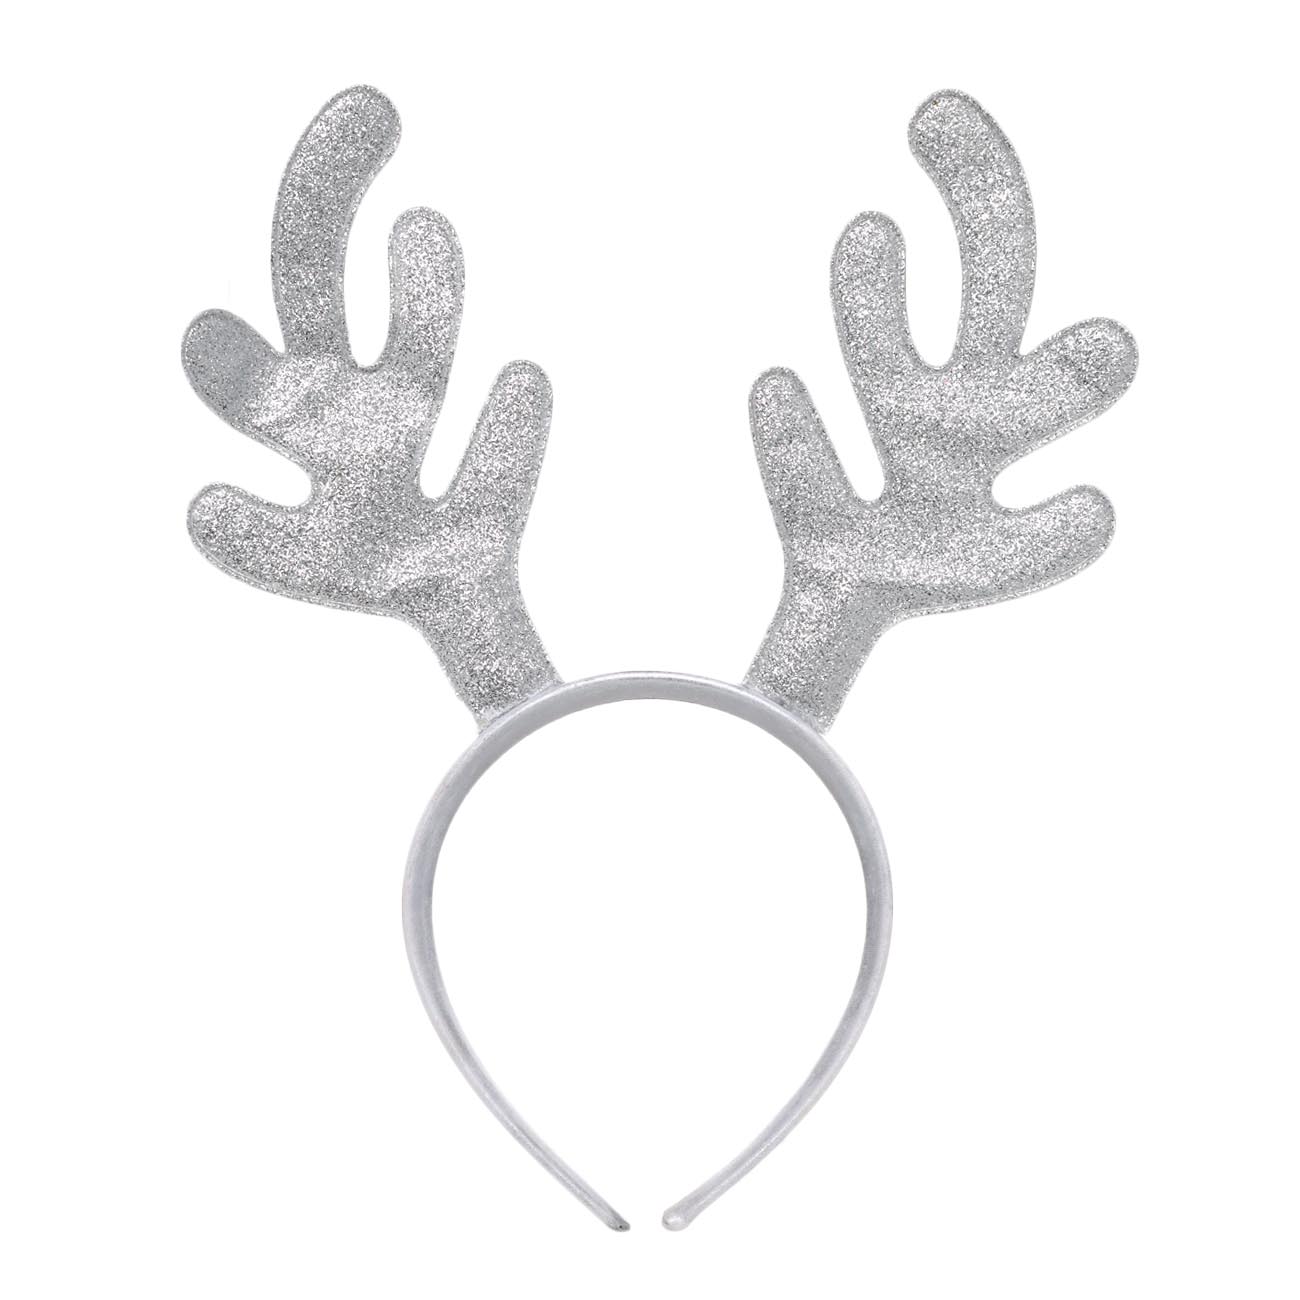 Ободок карнавальный, 12х14 см, полиэстер/пластик, серебристый, Рога оленя, Winter deer